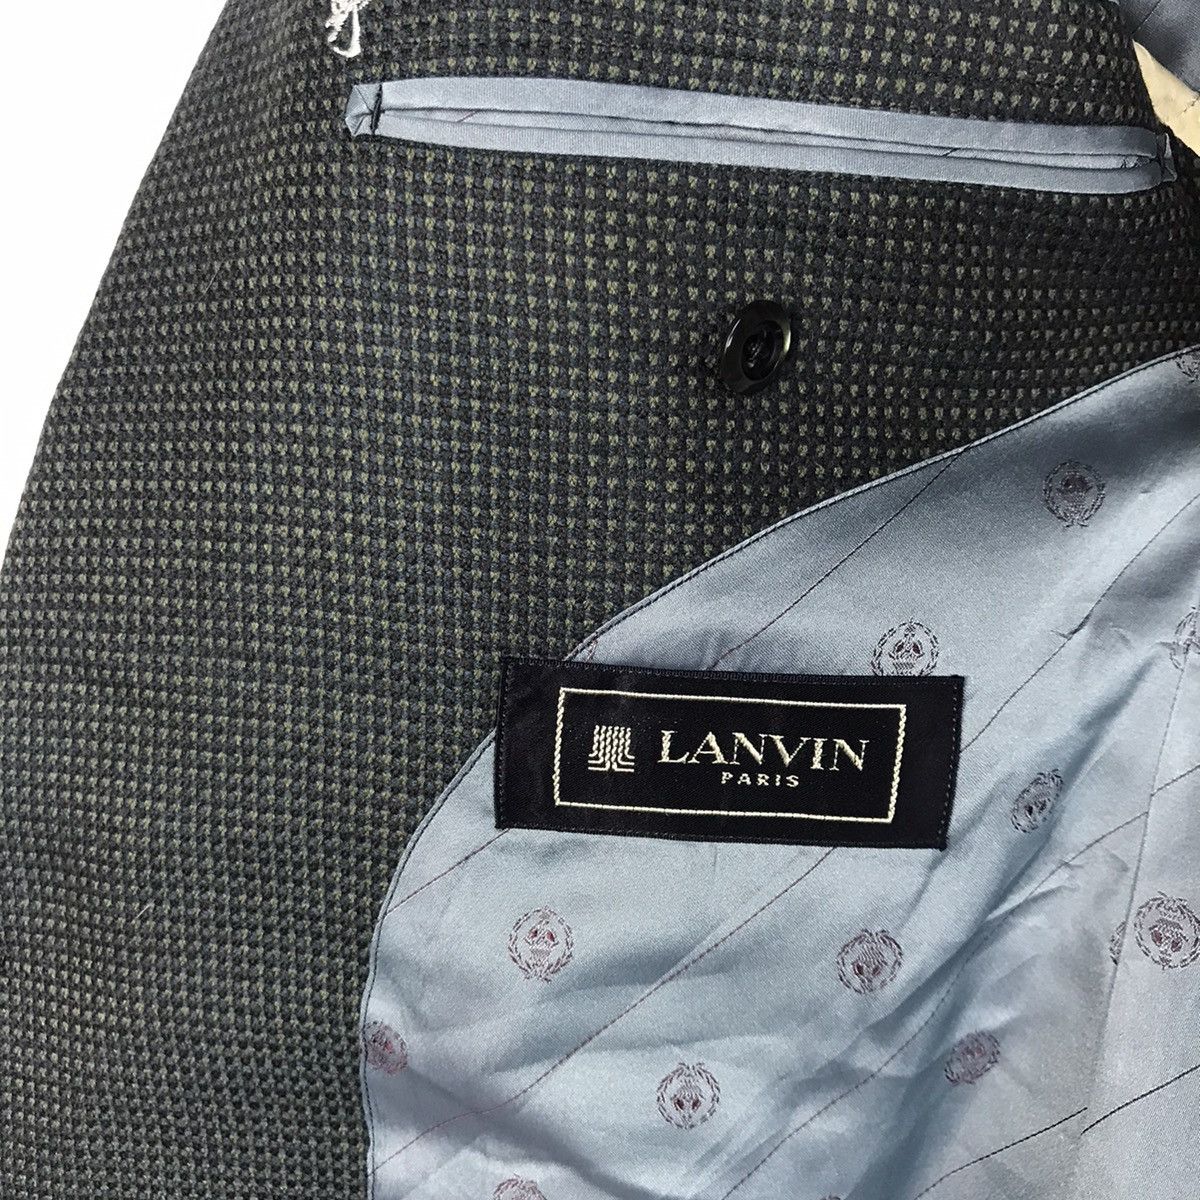 Lanvin Paris Suit Jacket - 4